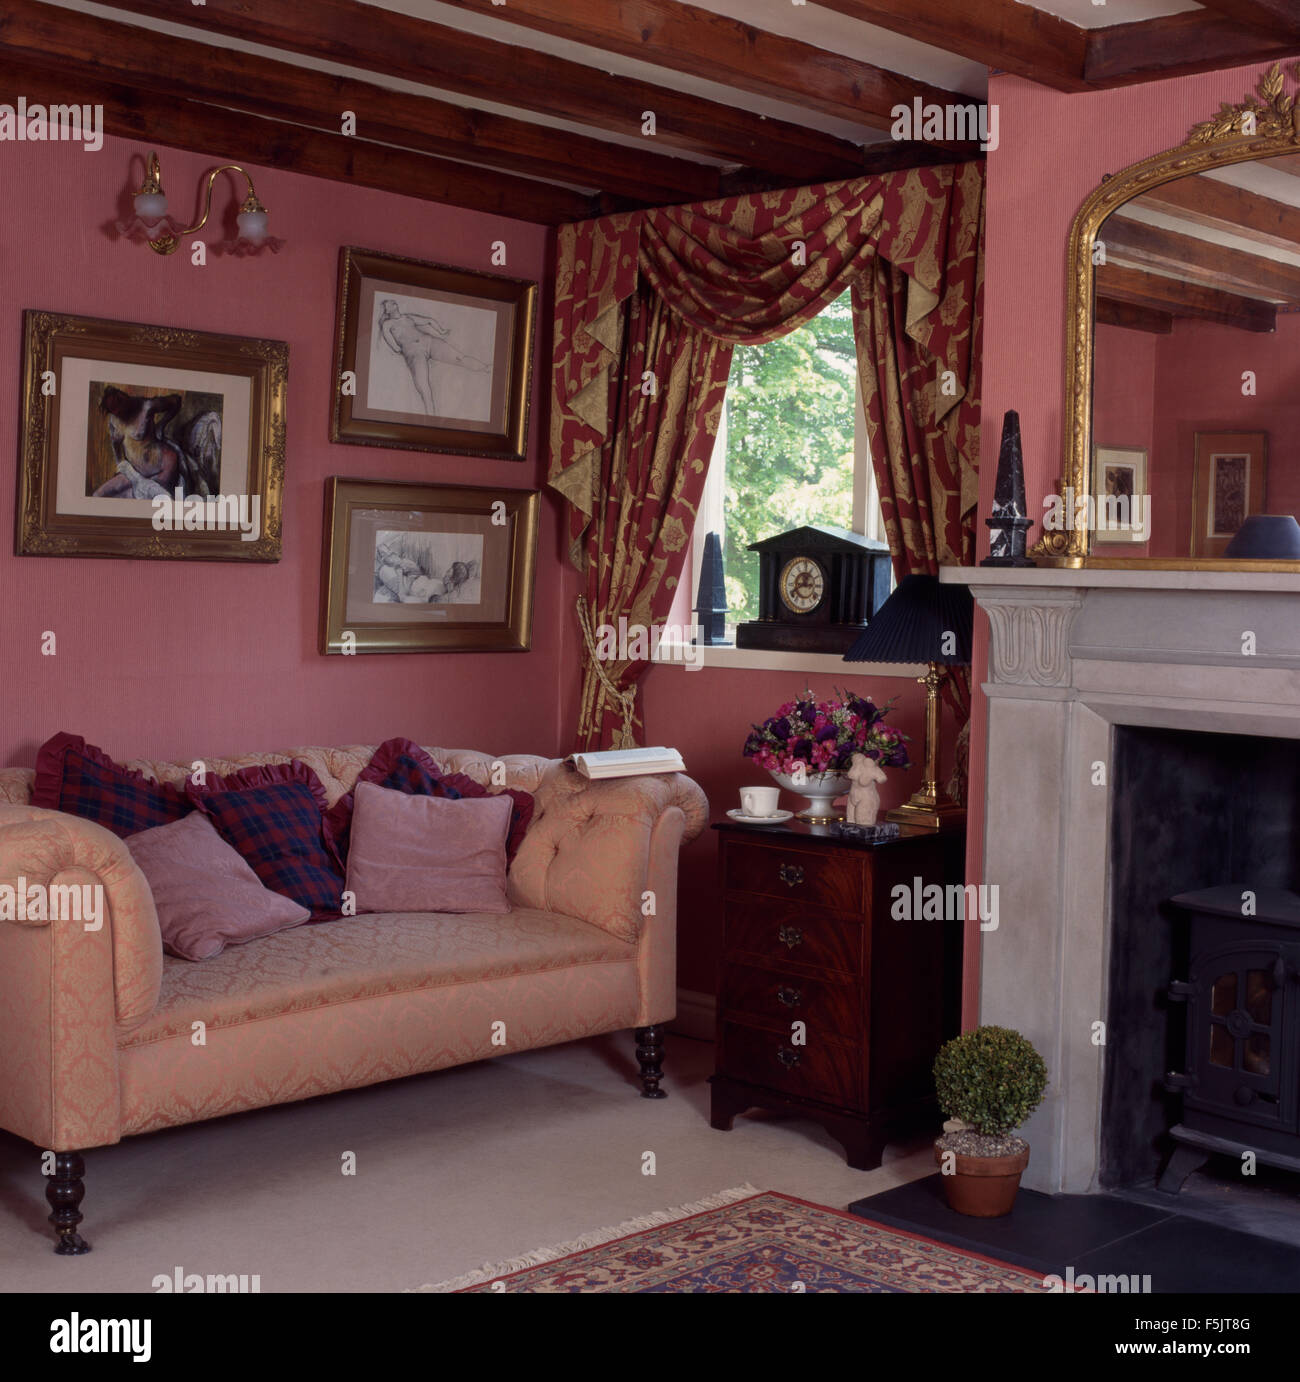 Chesterfield-Sofa in dunkelrosa der neunziger Jahre ein Ferienhaus Wohnzimmer mit swagged + tailed Vorhänge und eine kleine antike Kommode Stockfoto